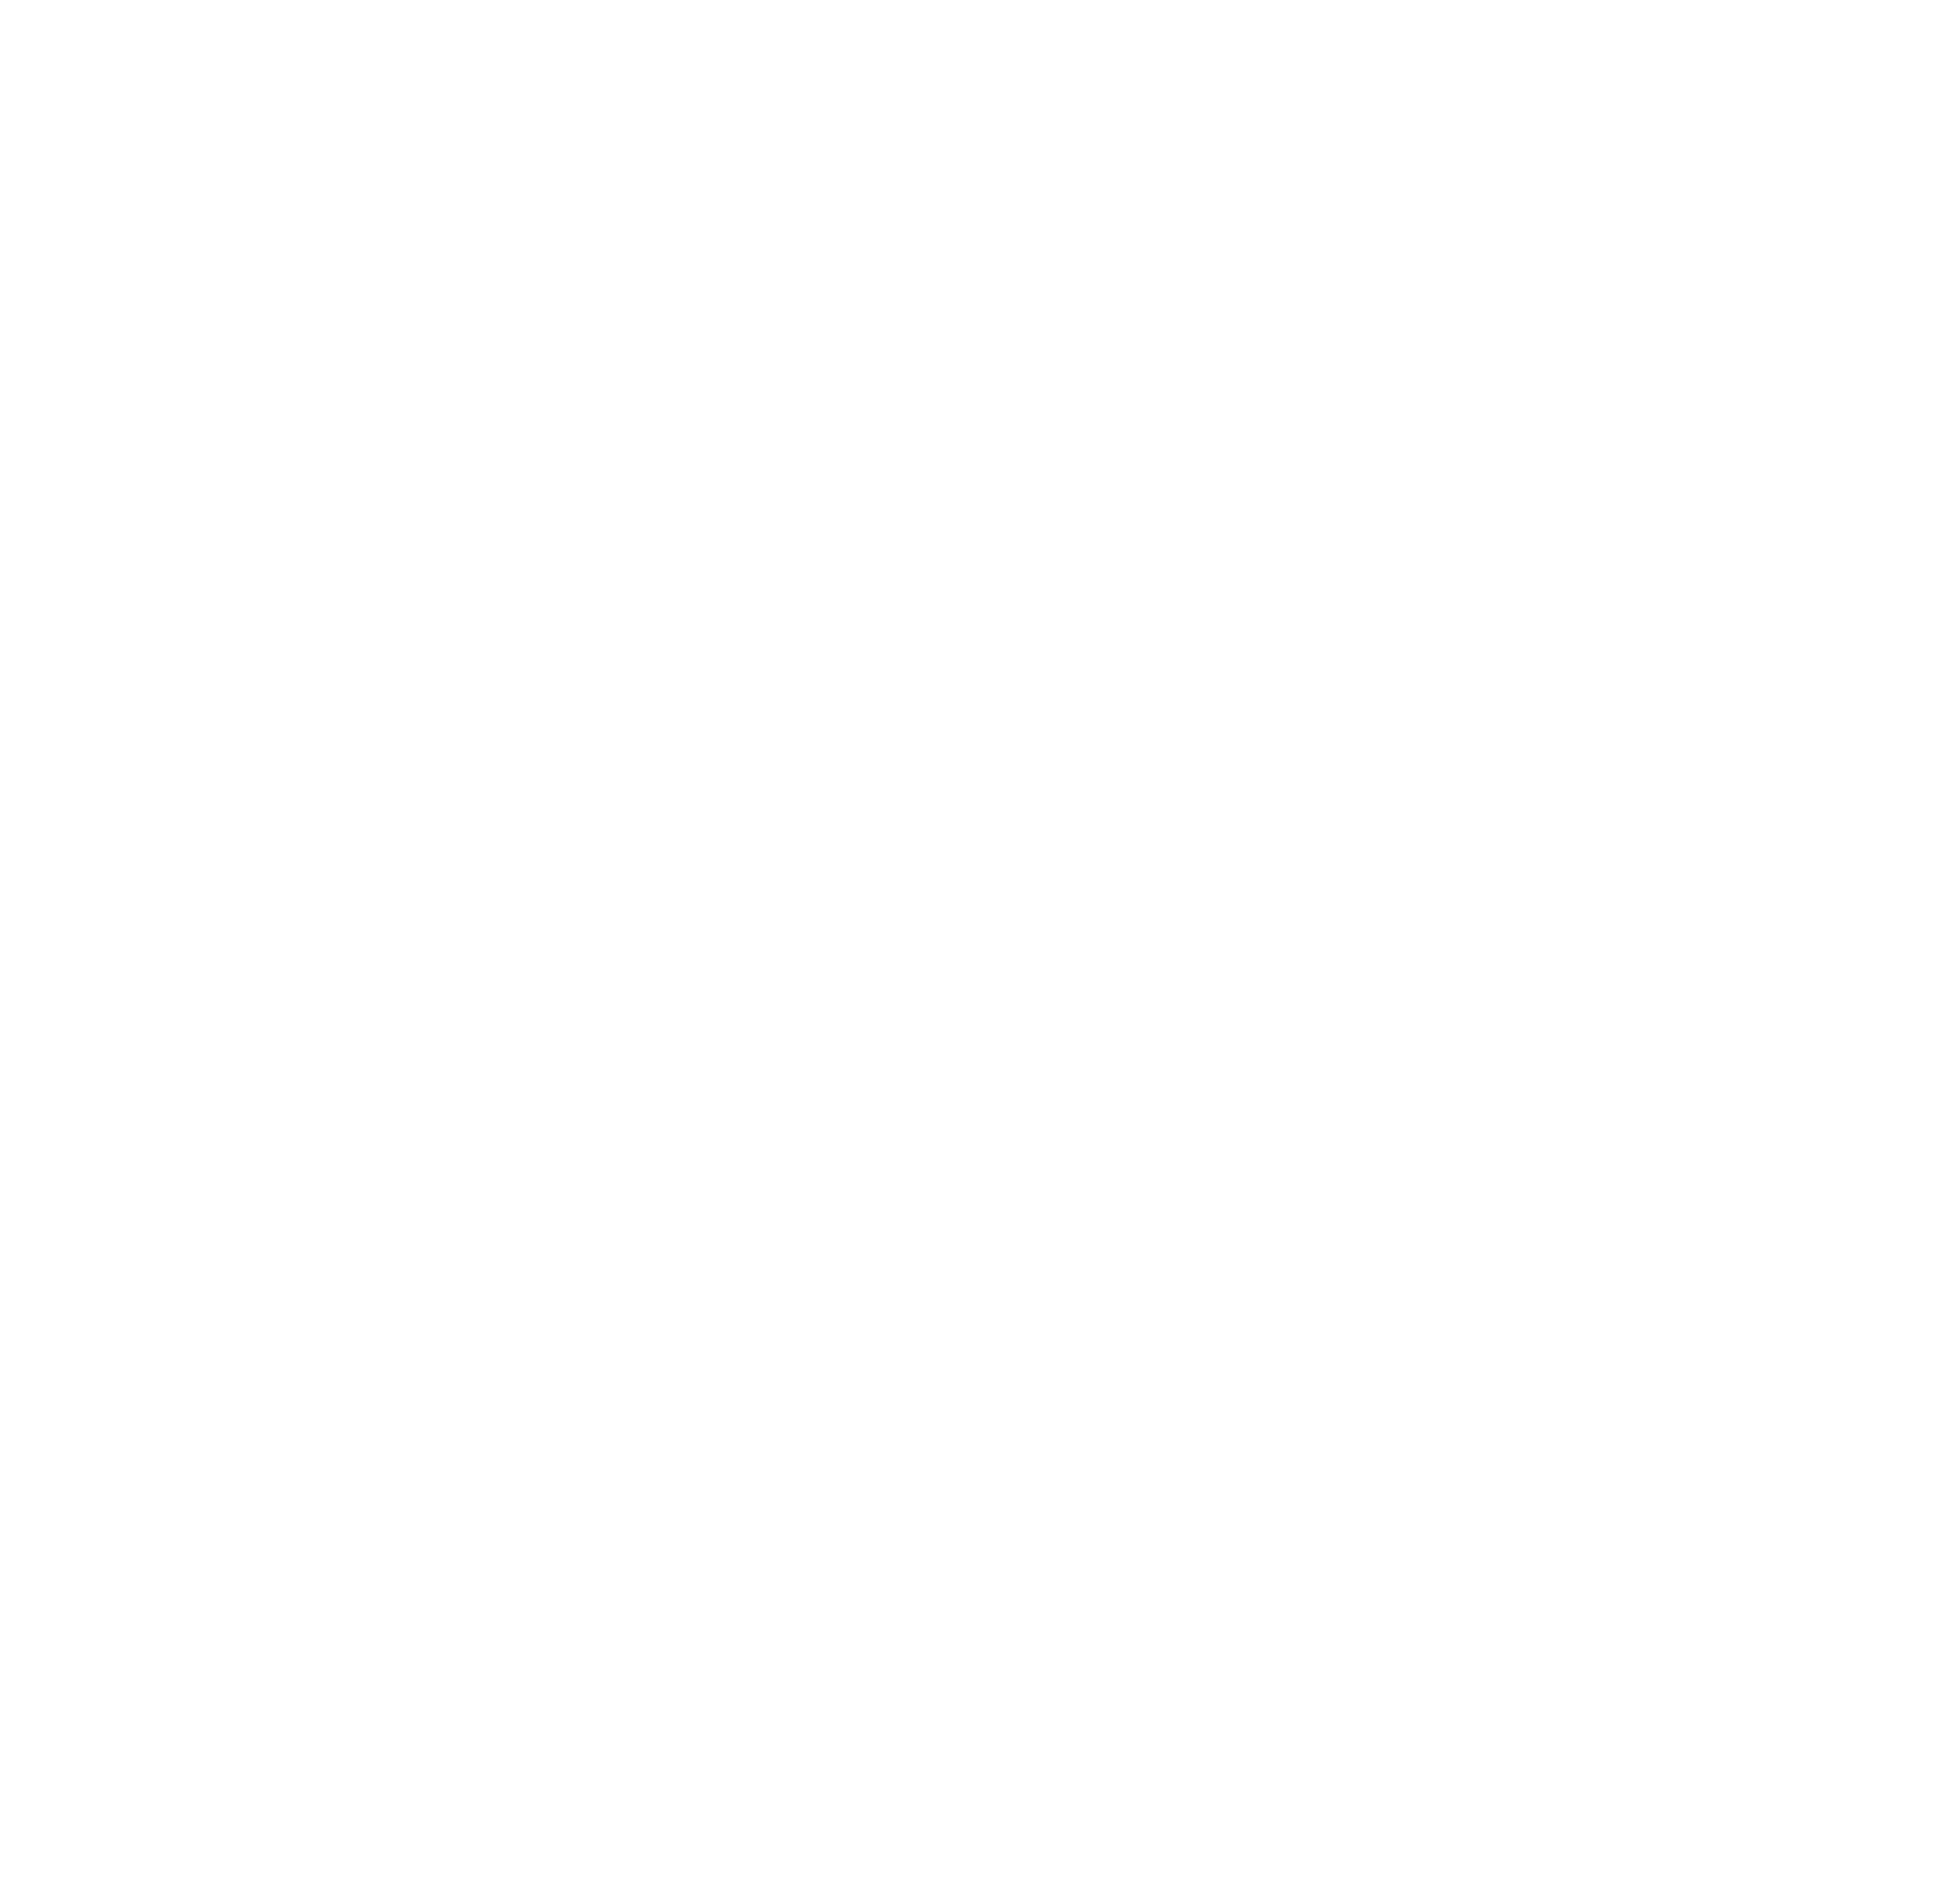 Steel Animal